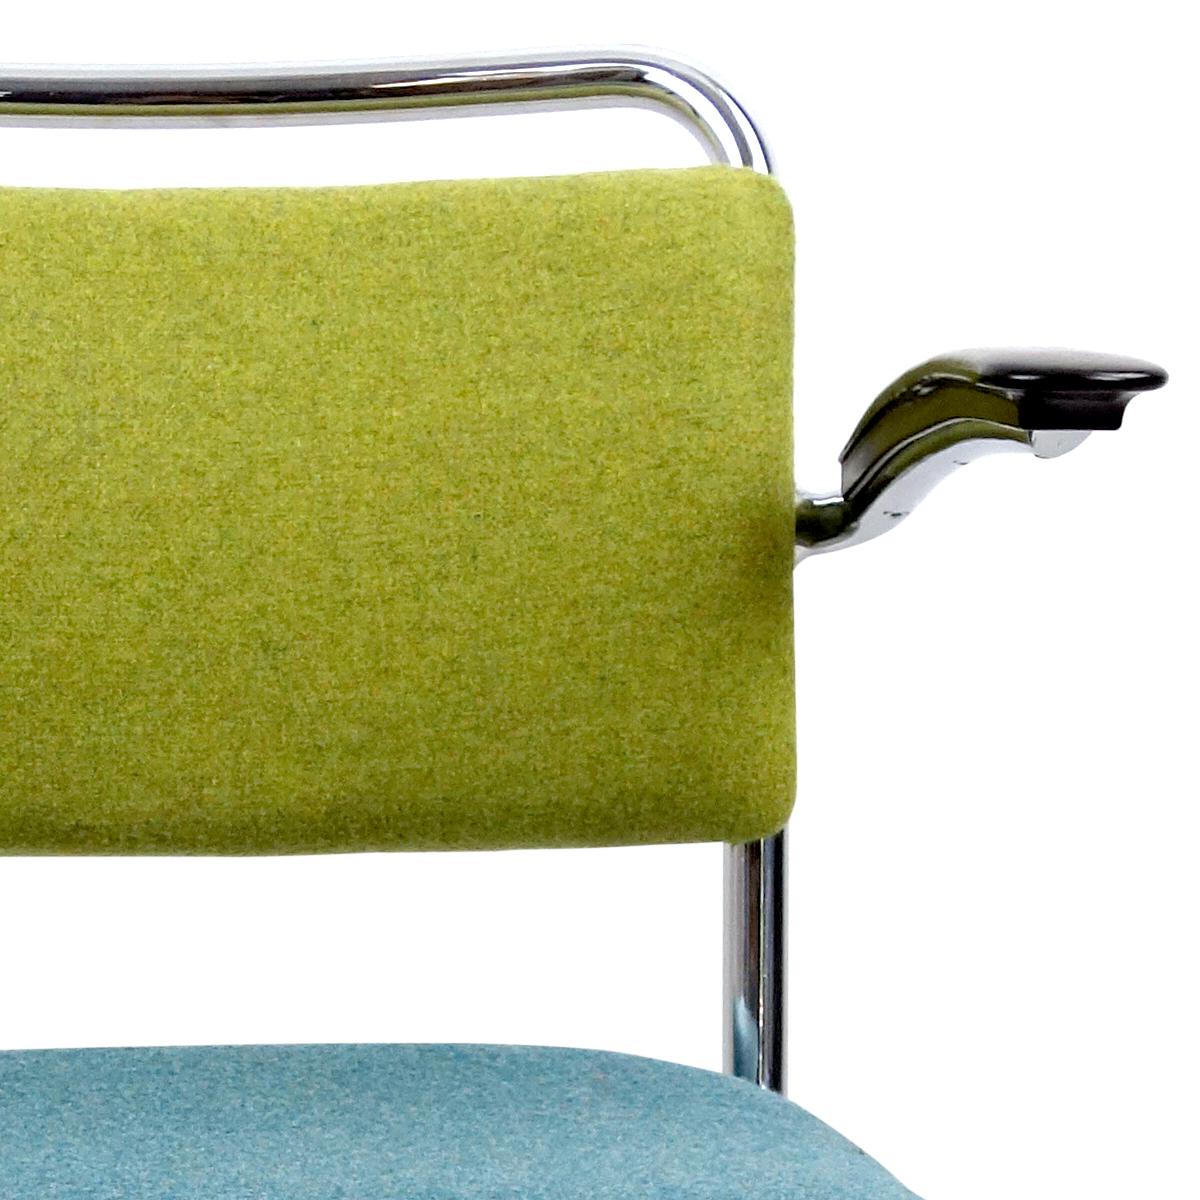 Dieser Klassiker des niederländischen Designs wurde 1931 von W.H. Gispen und ist seither wegen seines zeitlosen Aussehens und seines hohen Komforts ein sehr beliebter Stuhl. Er besteht aus einem verchromten Gestell und hat Armlehnen aus